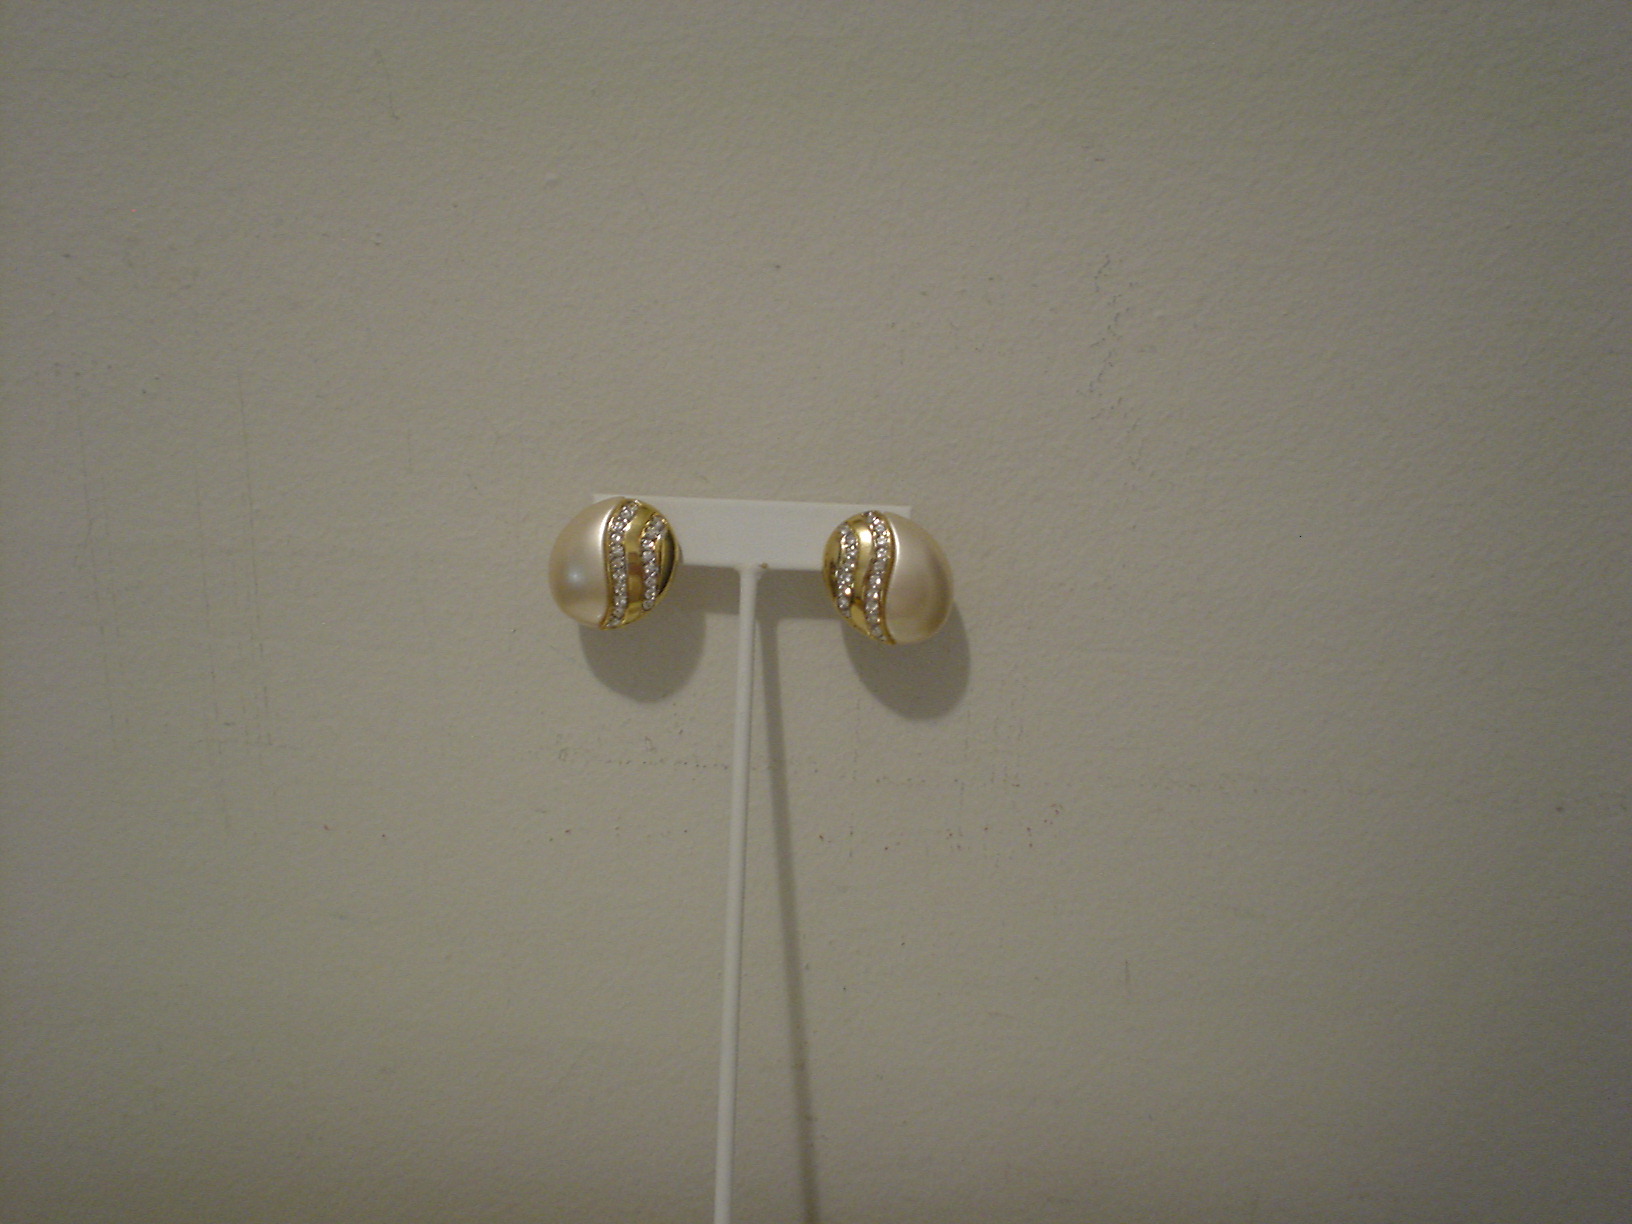 Kenneth Lane faux pearl earrings